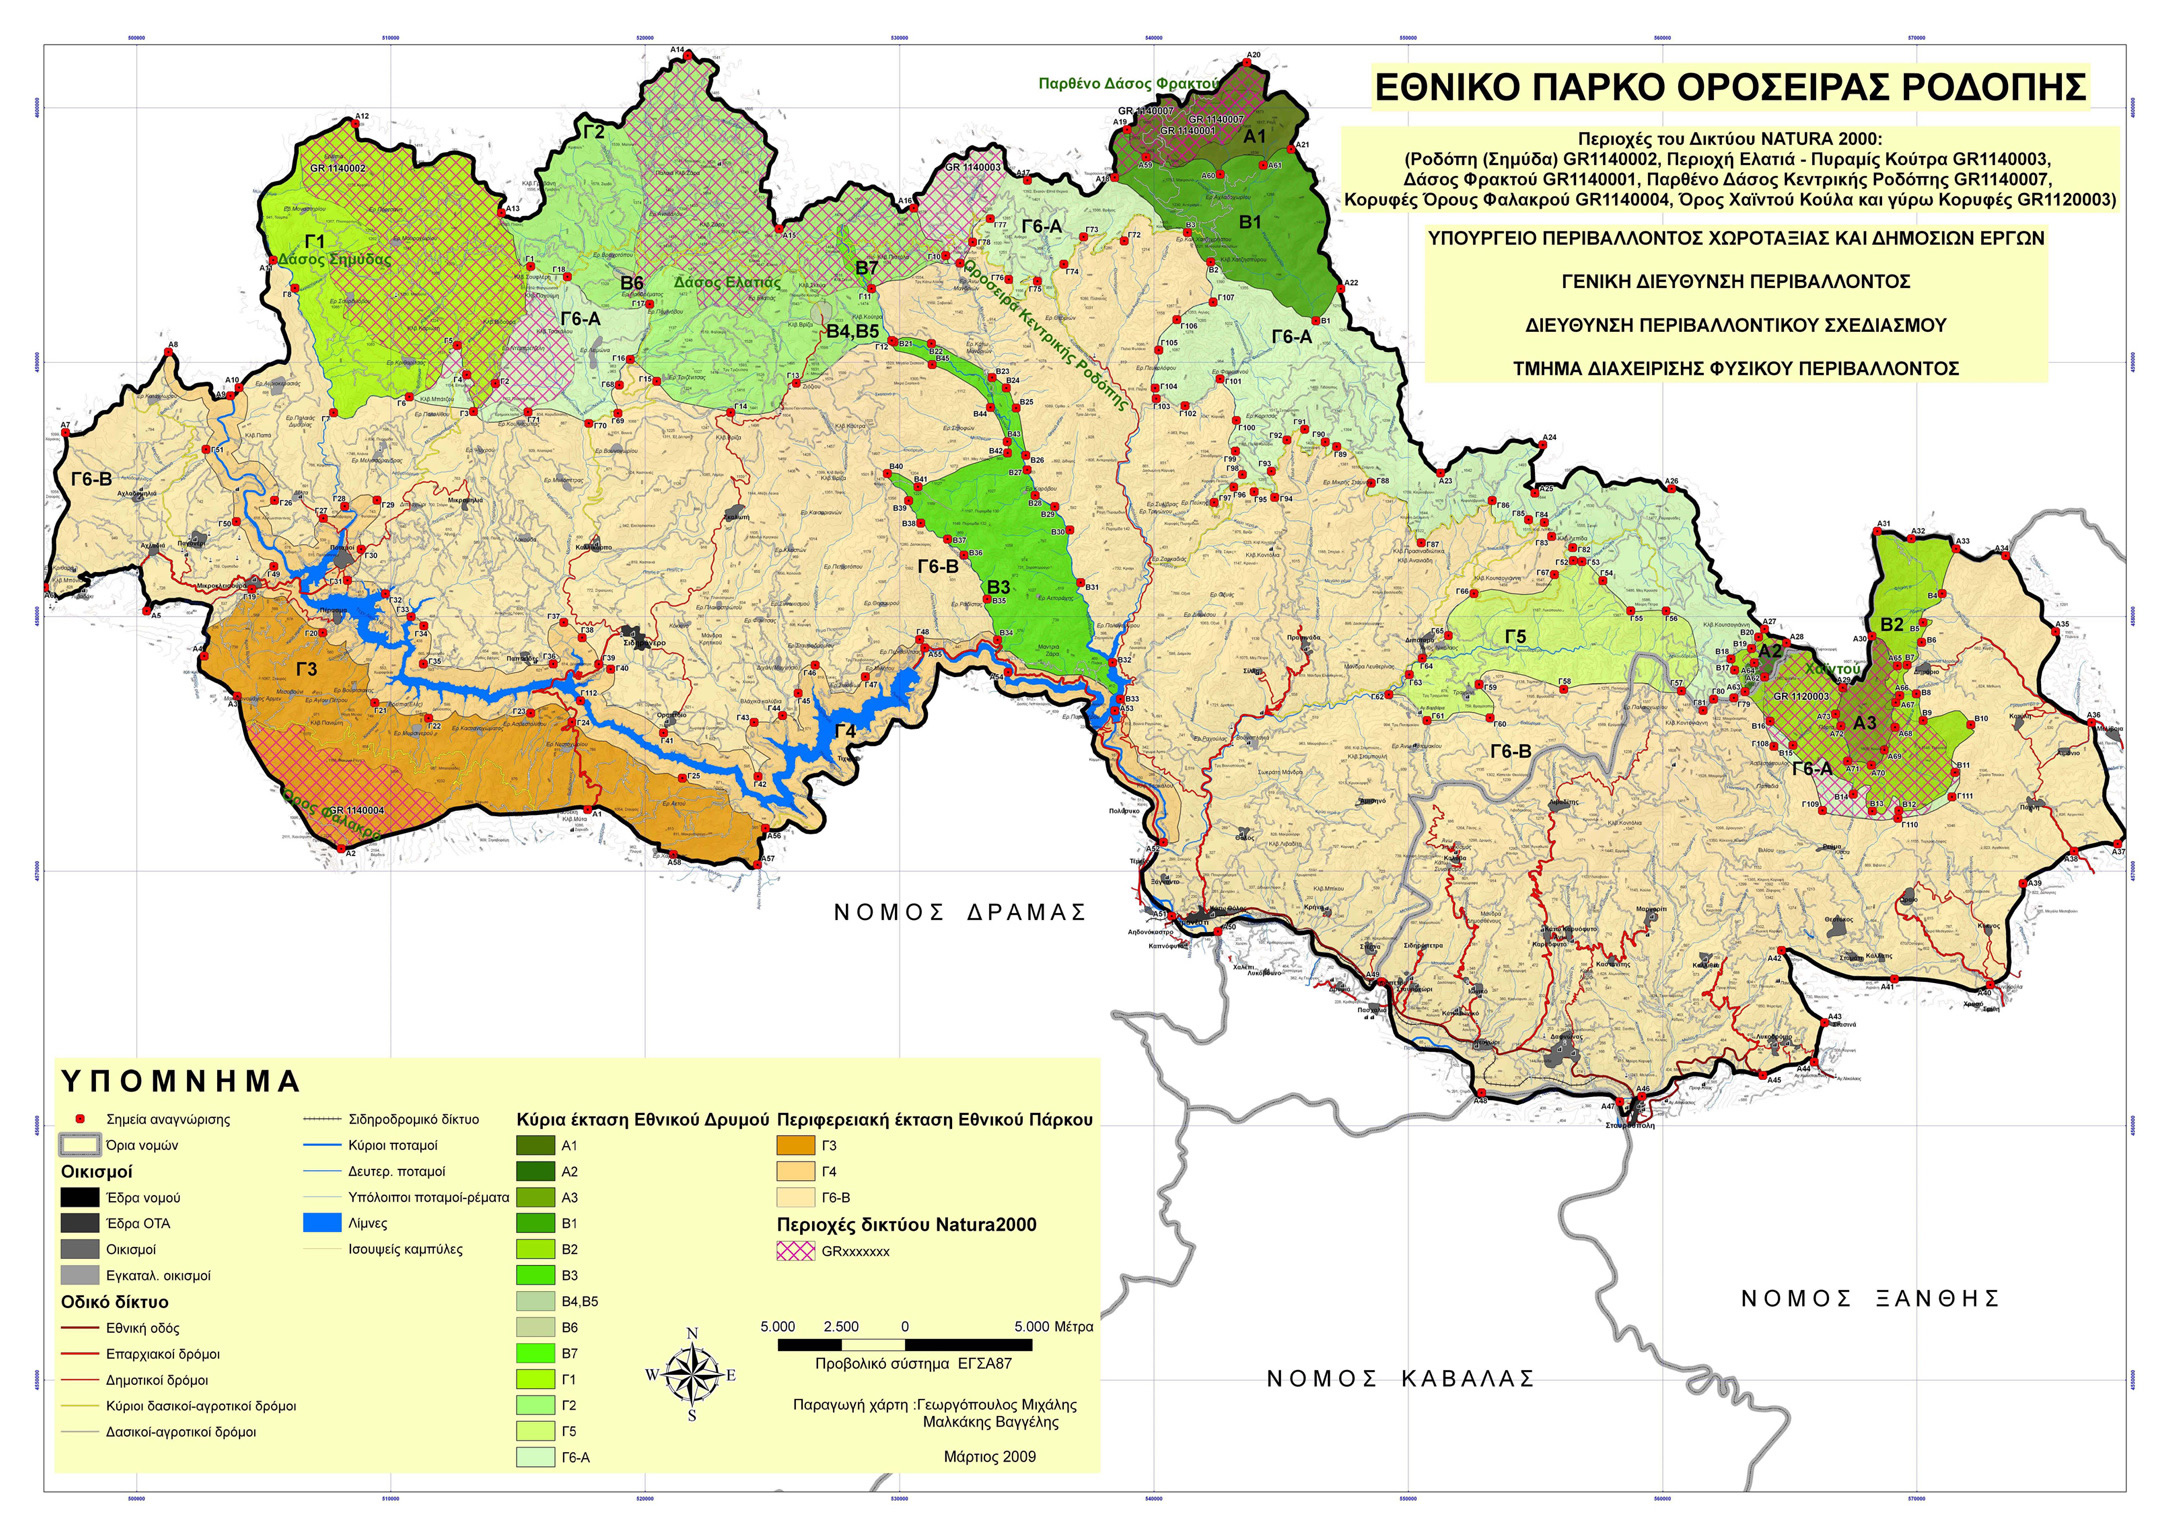 Διασυνοριακή συνεργασία Ελλάδας-Βουλγαρίας για την προστασία του φυσικού περιβάλλοντος στην Οροσειρά Ροδόπης